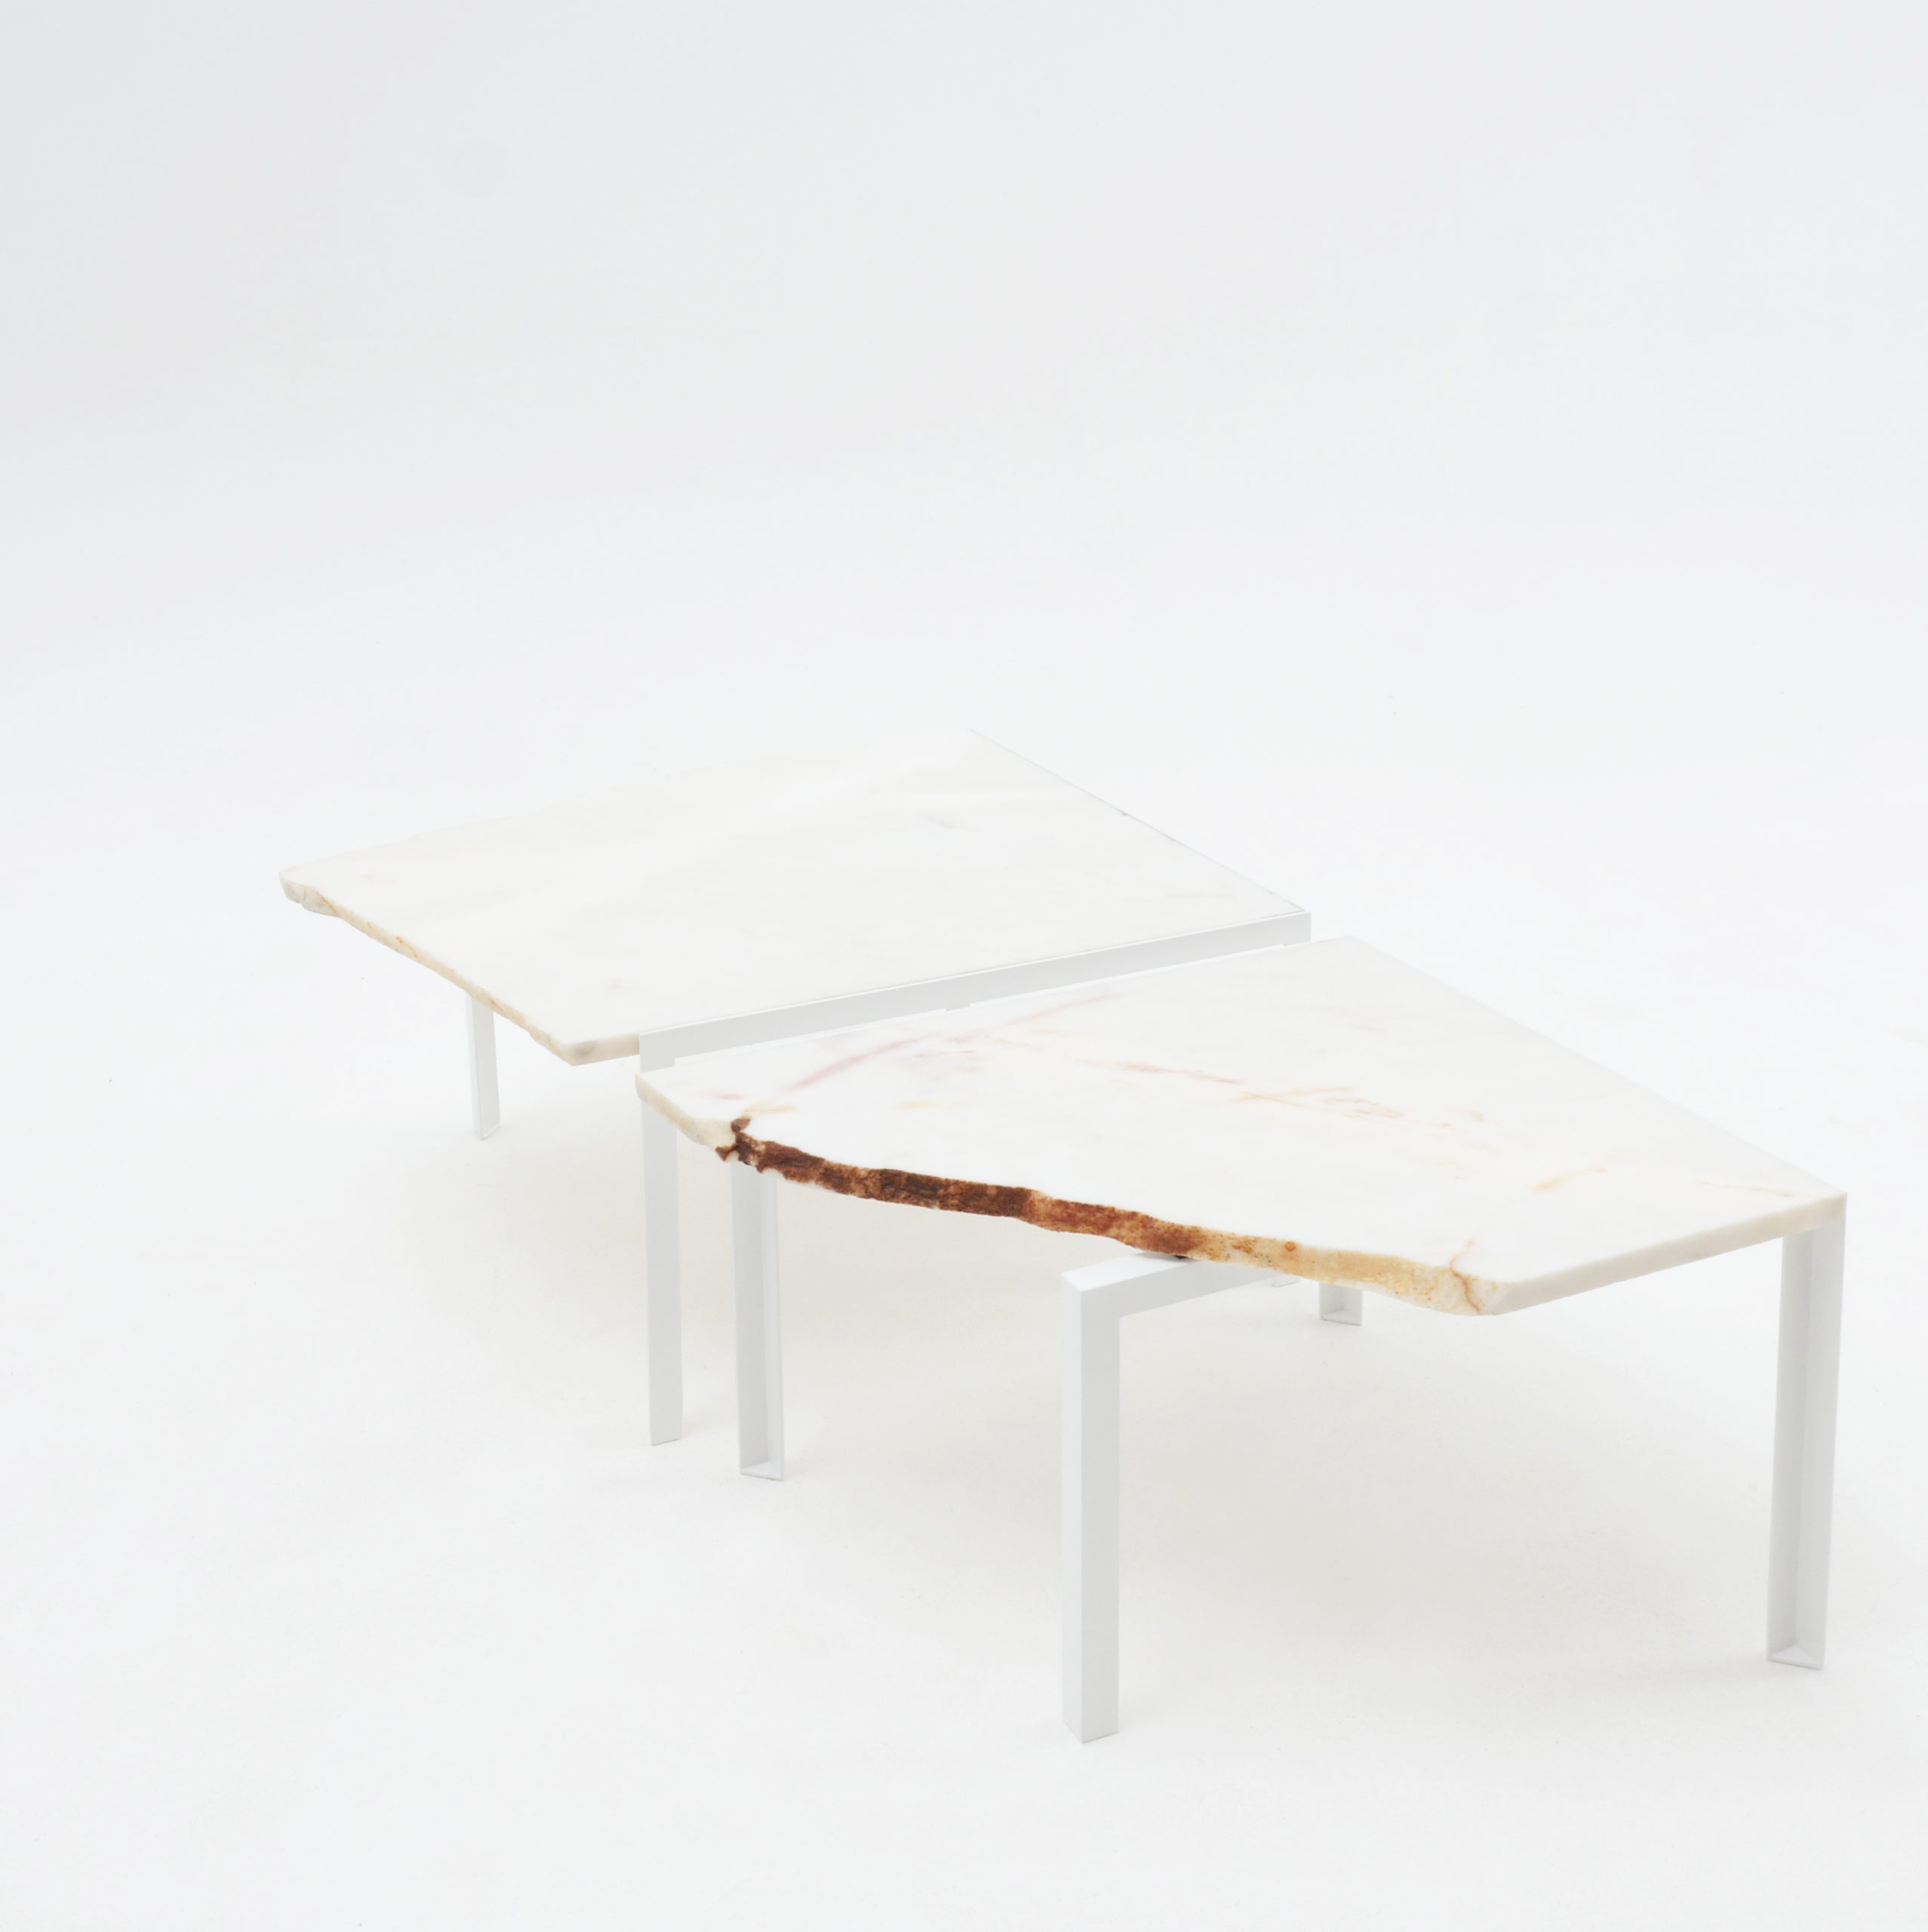 Beistelltisch von Atelier Haussmann entworfen von Hervé Humbert, Petite table d'angle ist ein kleiner Tisch aus Marmor Reststücke, es sind alle Unikate